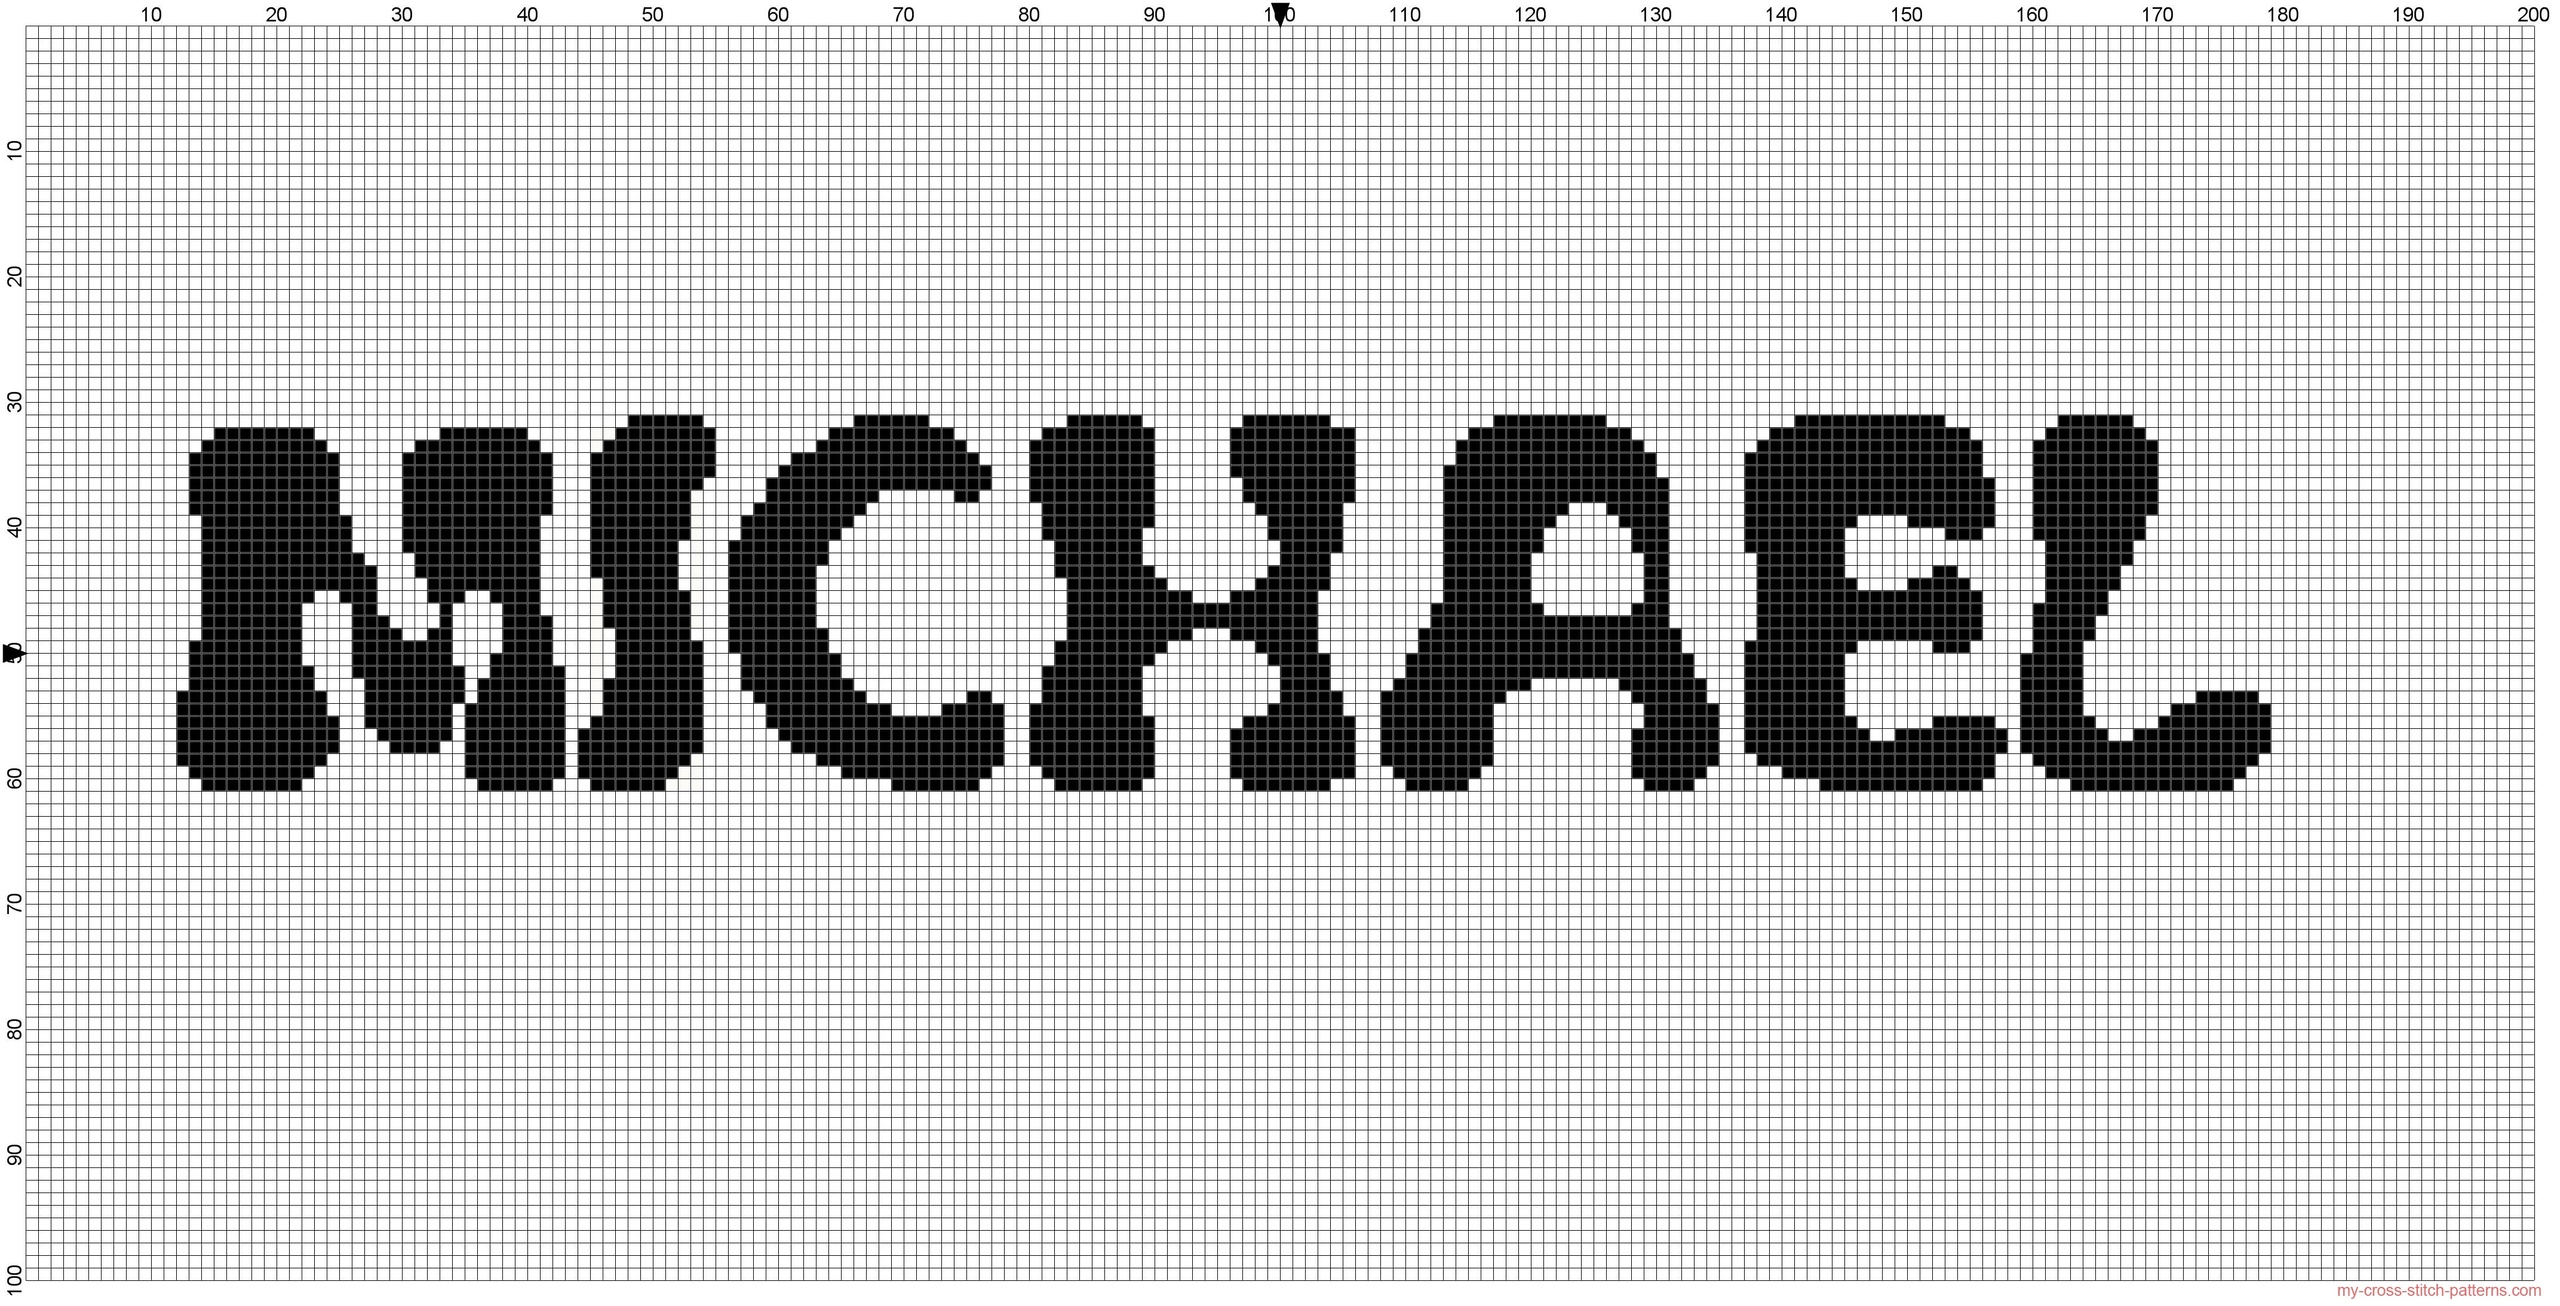 name_michael_cross_stitch_pattern_free